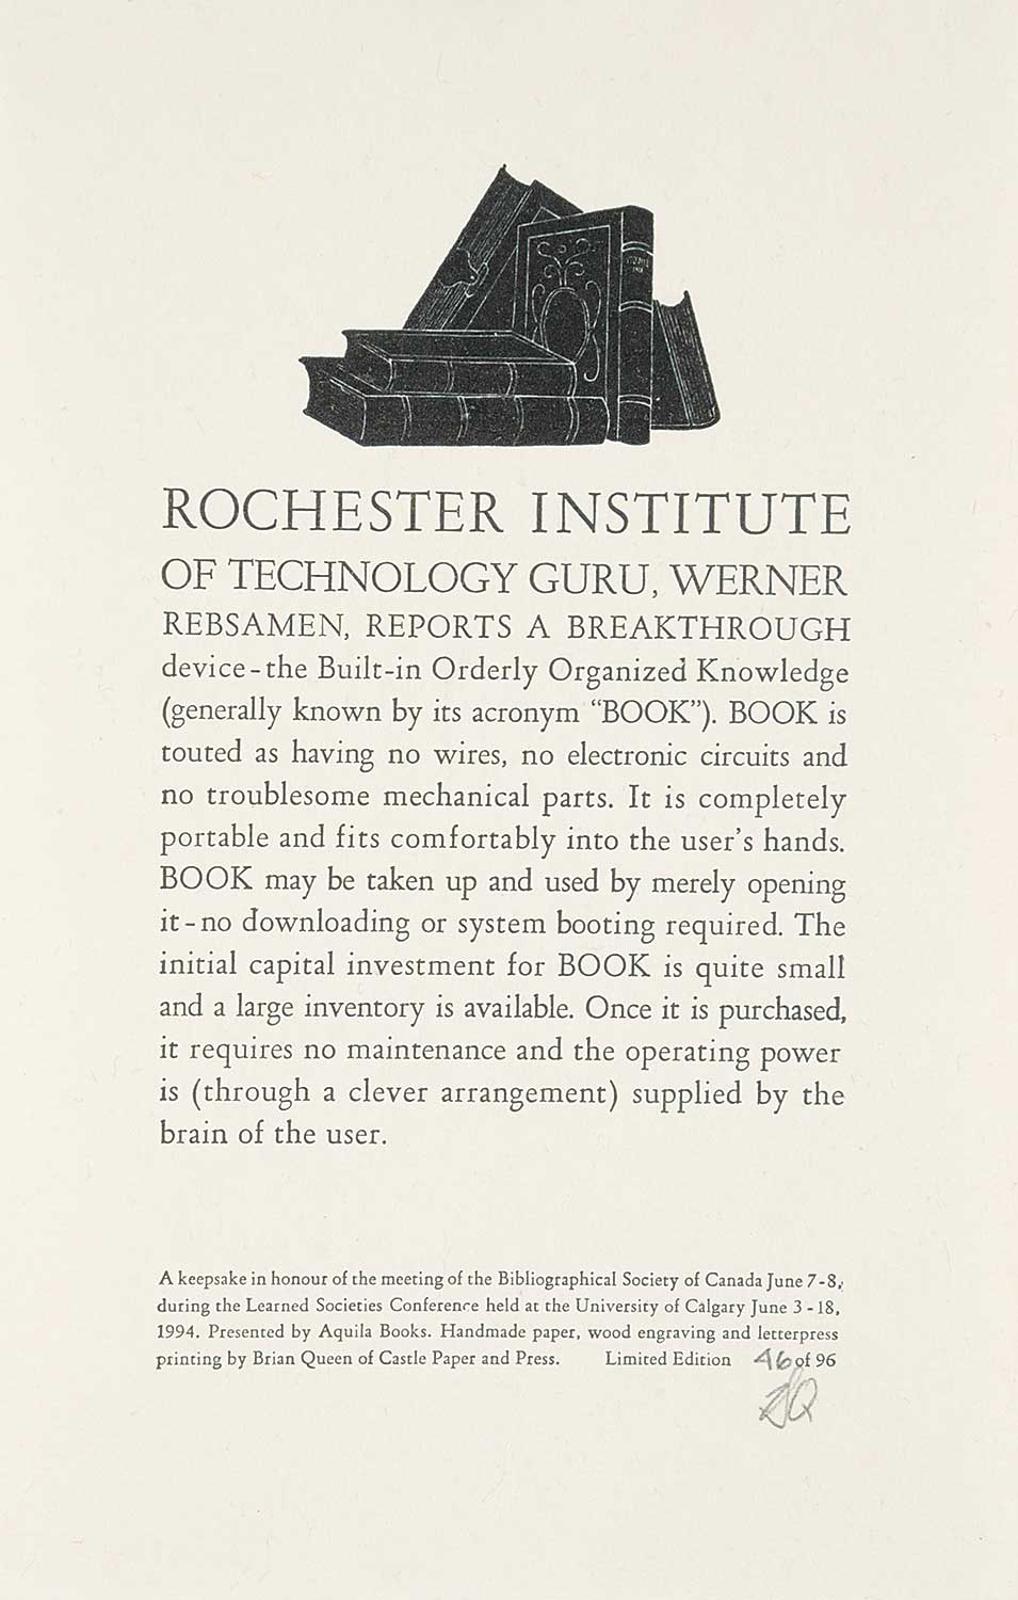 Brian Queen - Rochester Institiute of Technology - Keepsake  #46/96